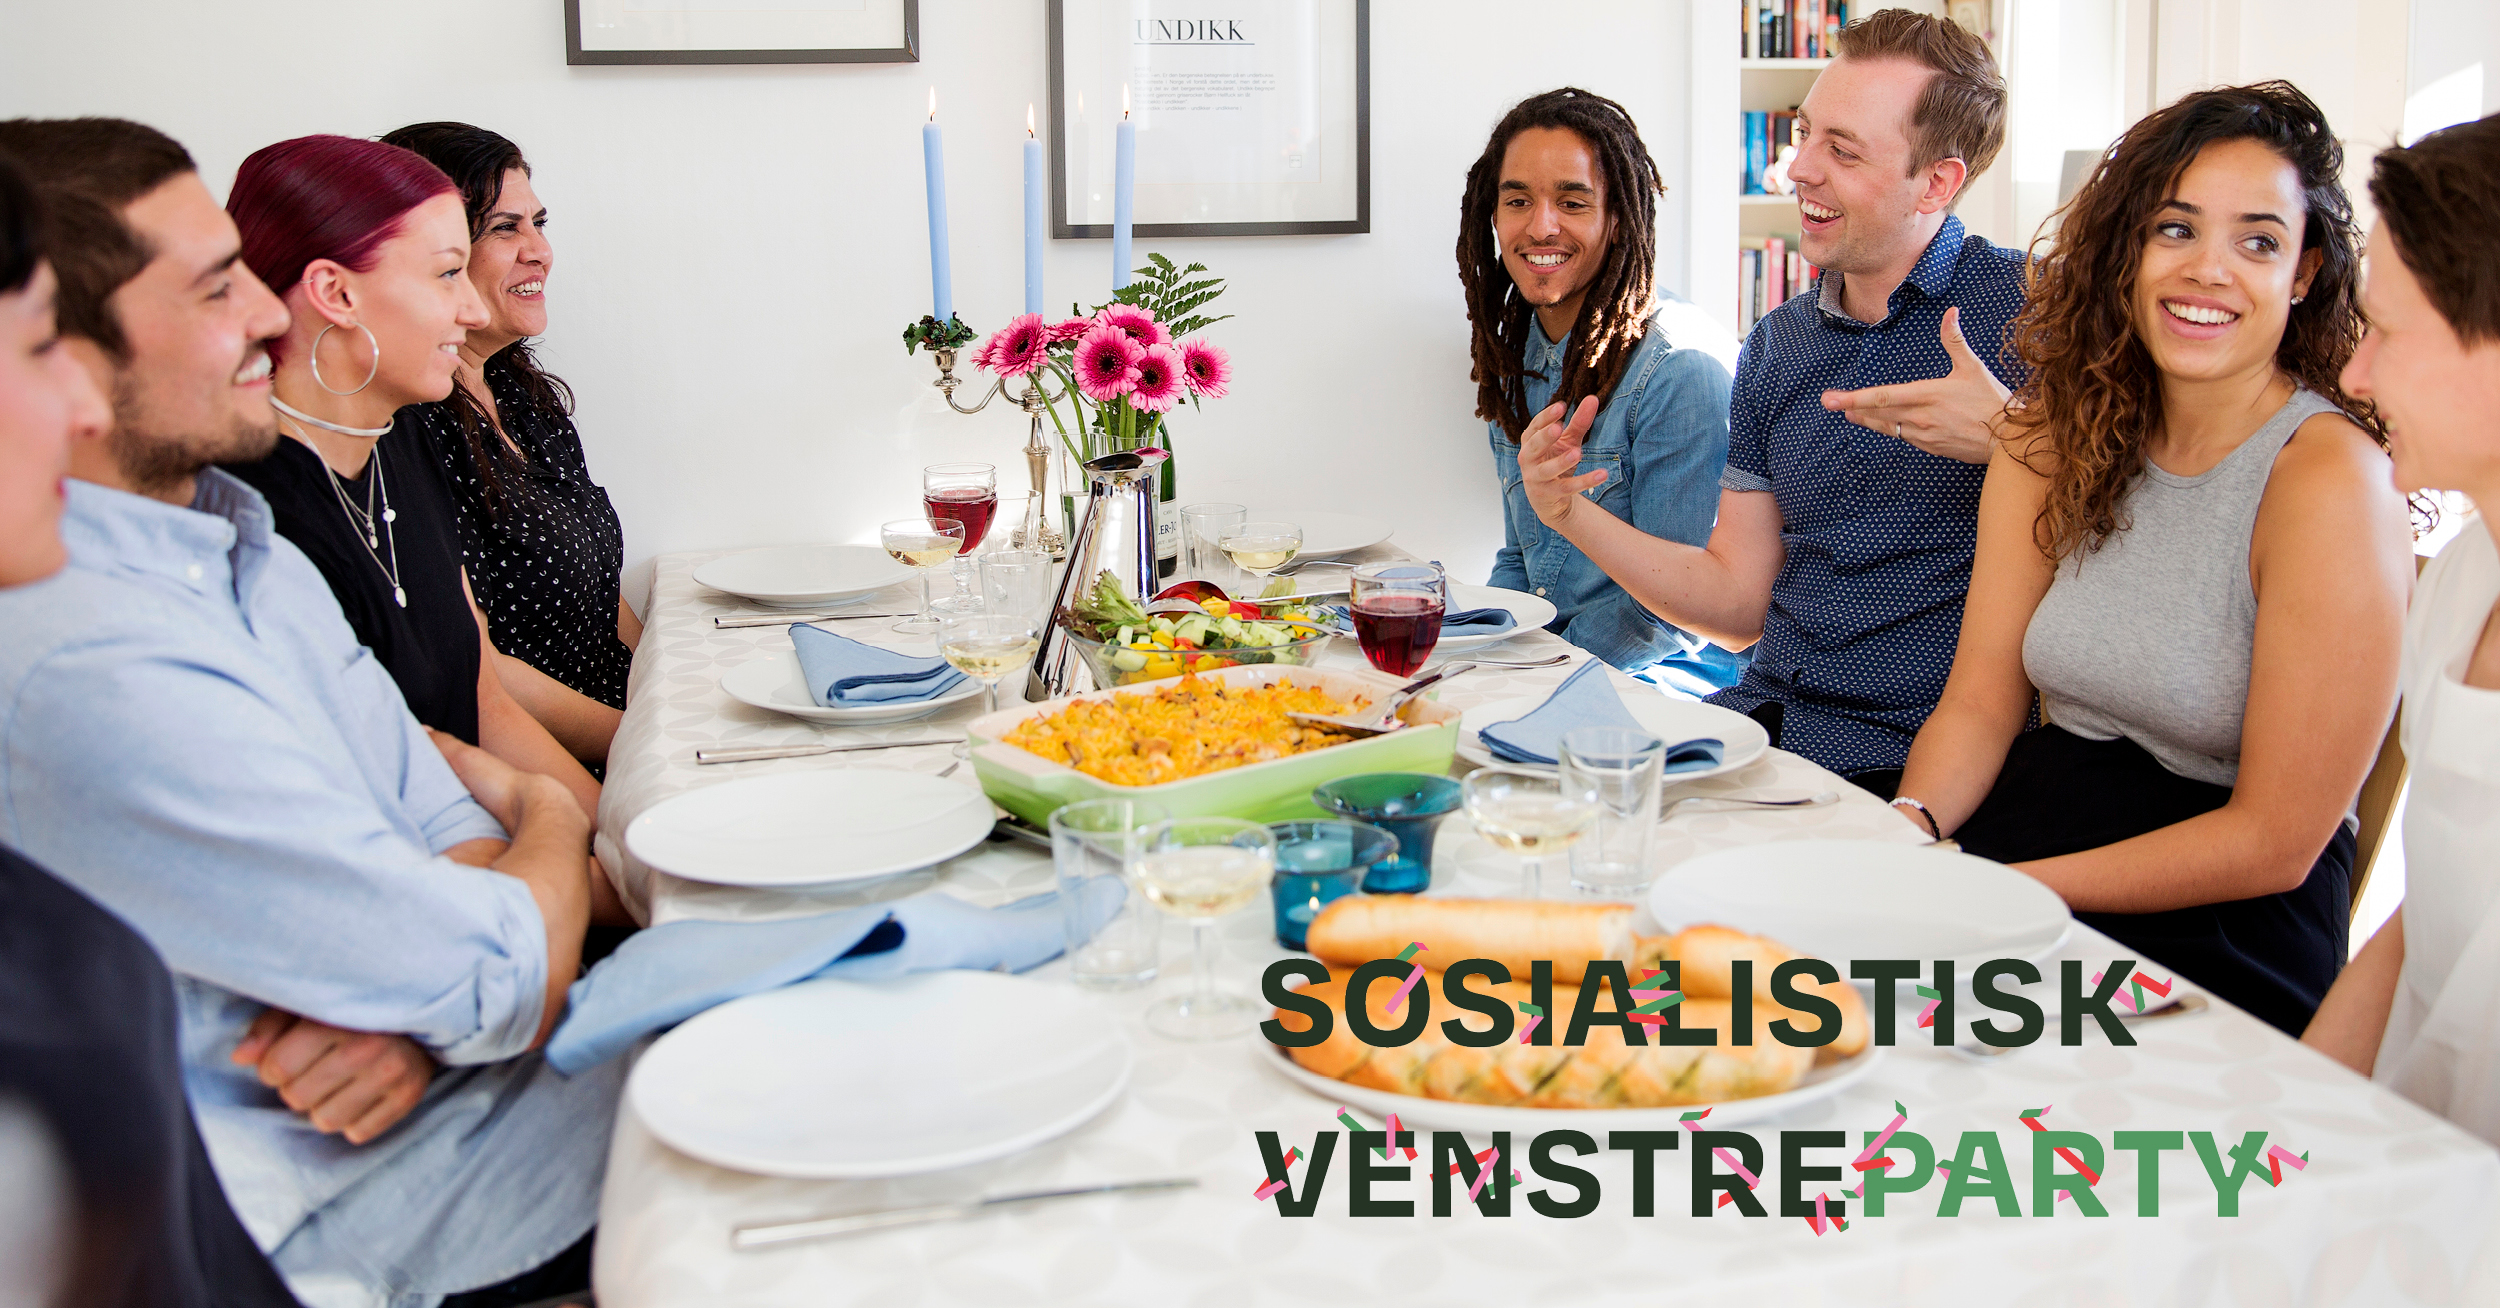 Sosialistisk Venstreparty - Folk rundt spisebord. tekst over foto